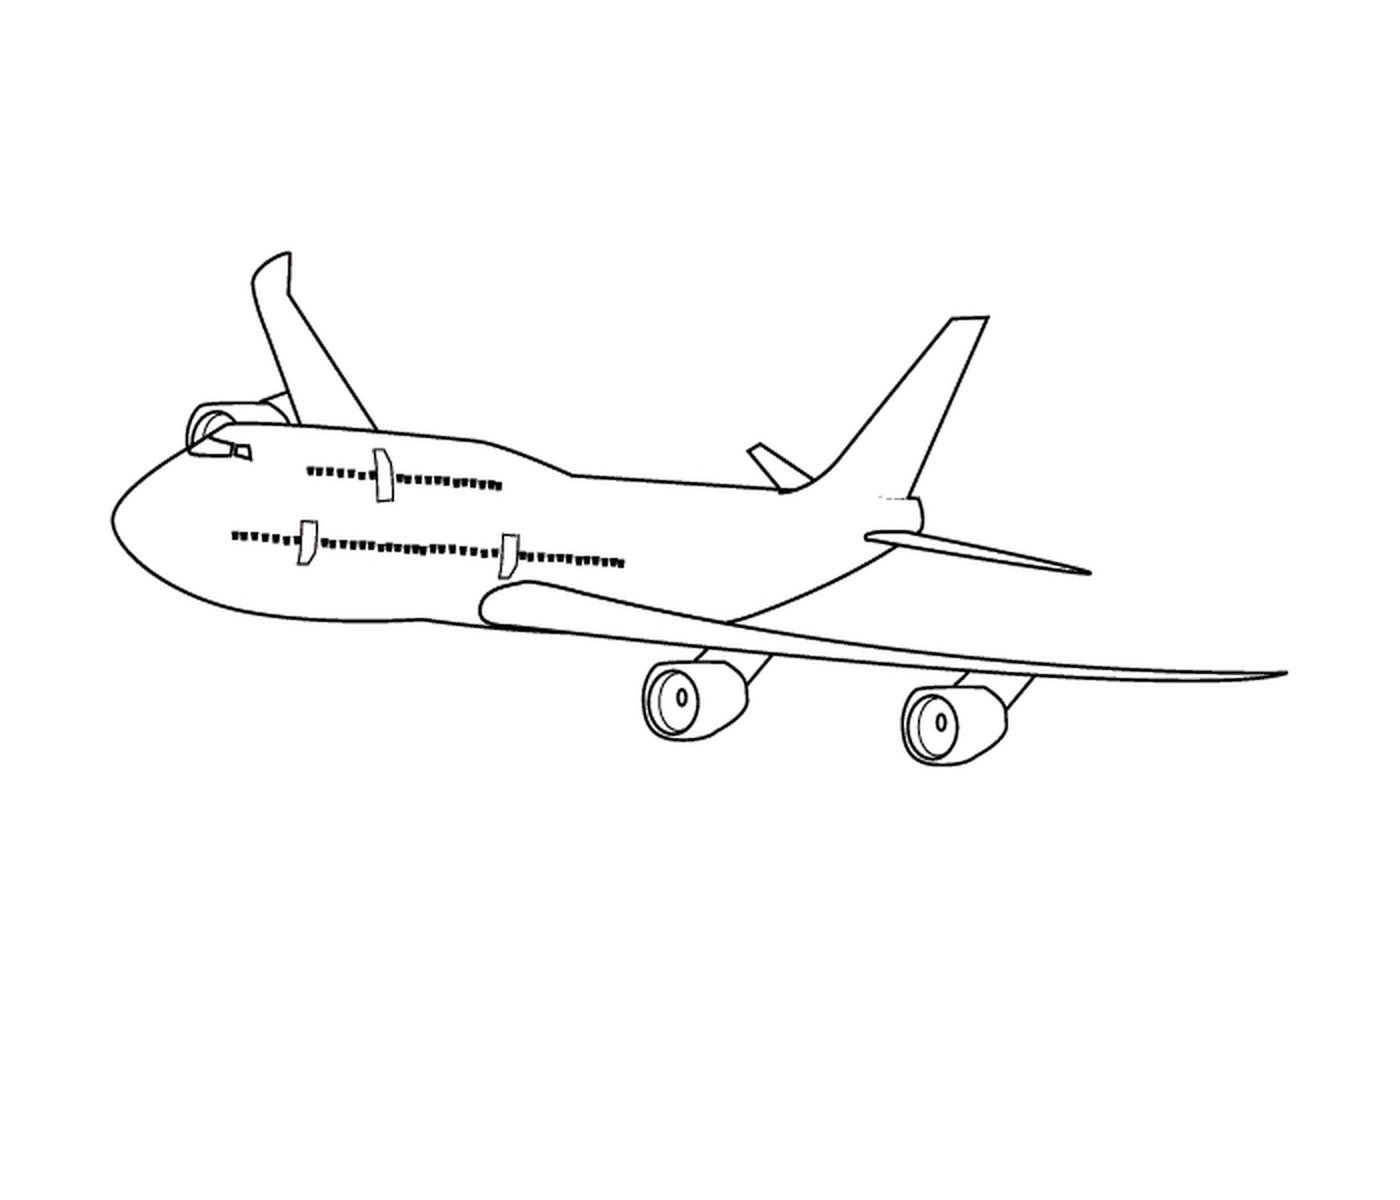  Самолёт, который нарисован 